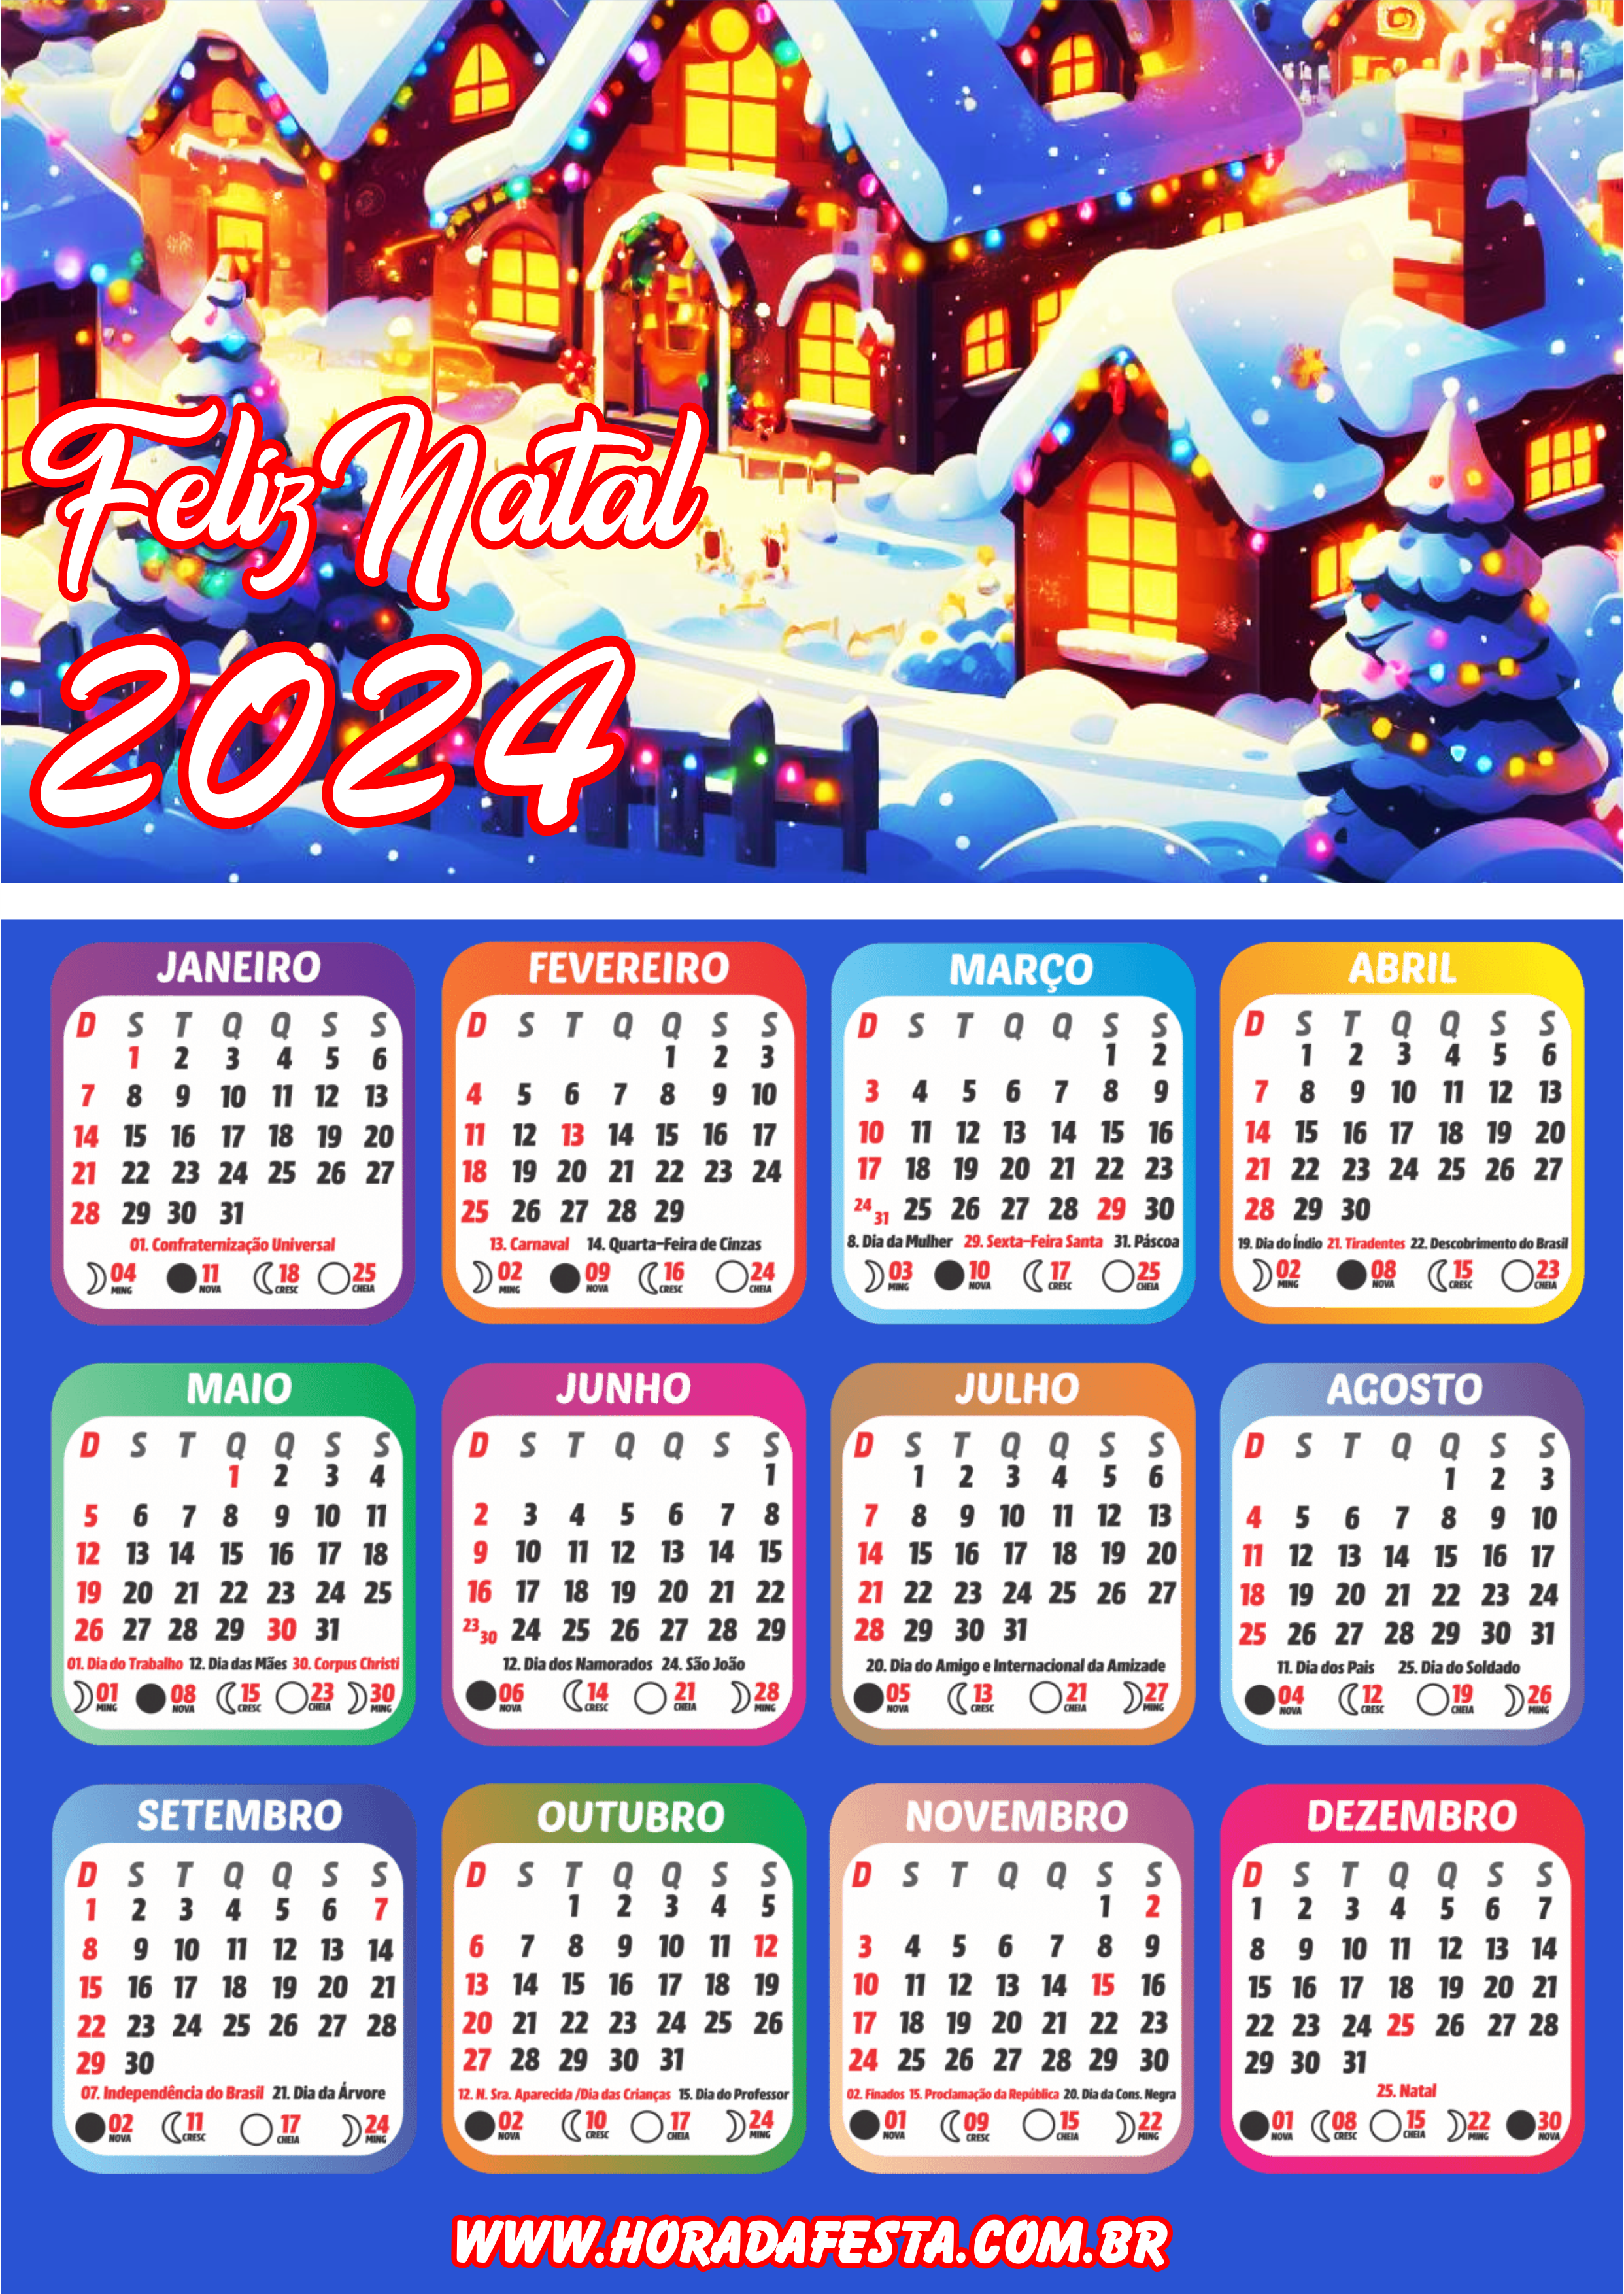 Feliz natal noite feliz calendário 2024 artigos de papelaria renda extra com personalizados artes gráficas pack de imagens png